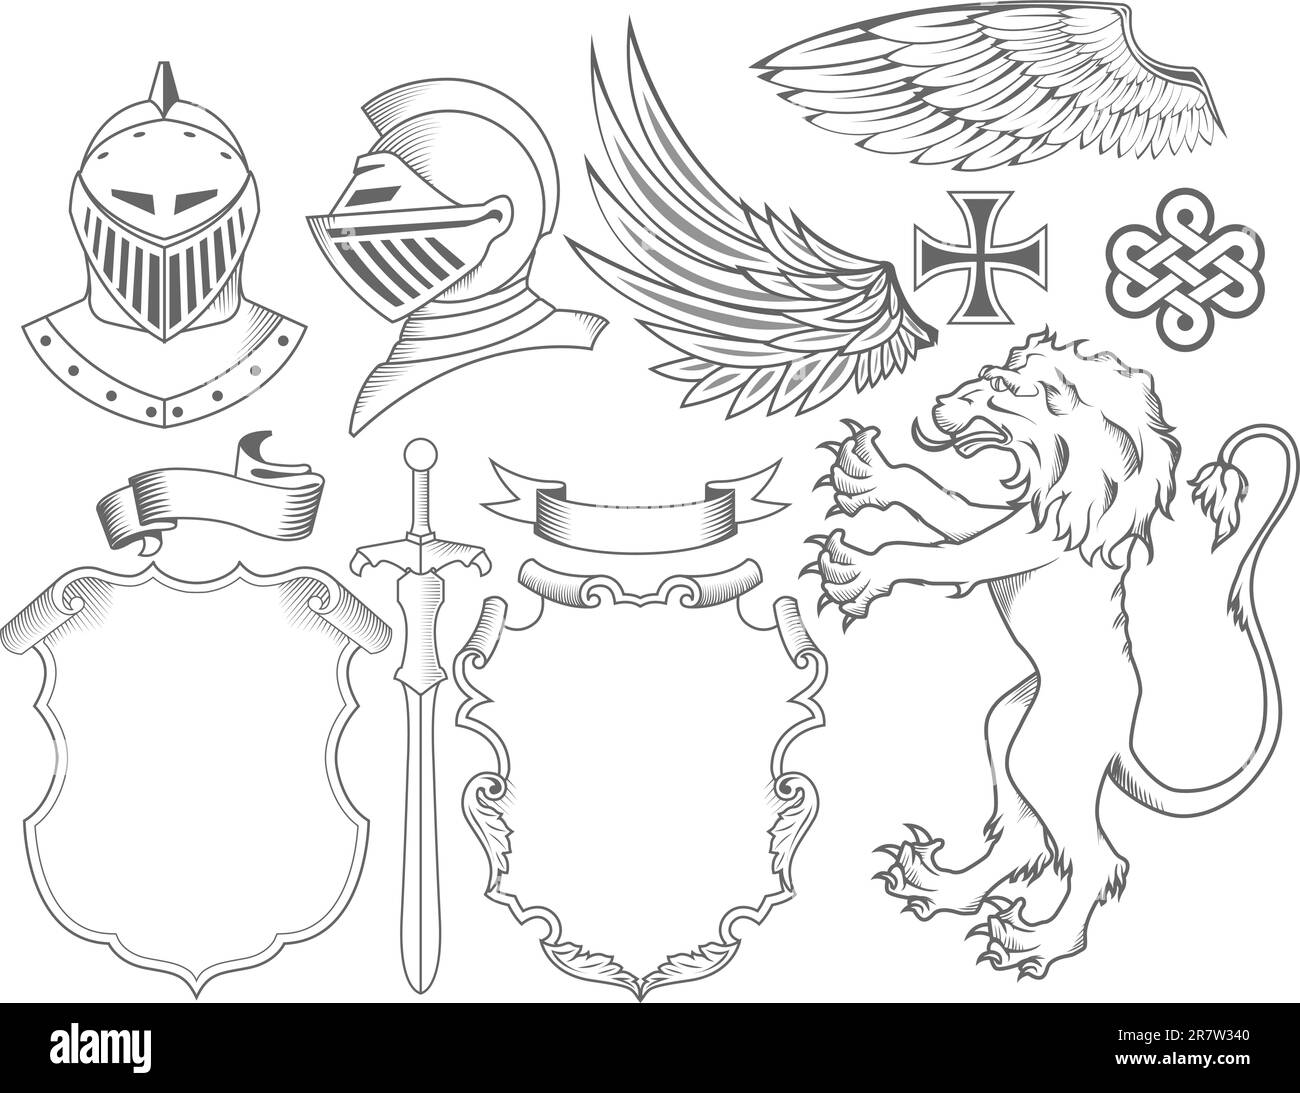 Eine Reihe von Rittern, heraldischen Elementen und Symbolen Stock Vektor